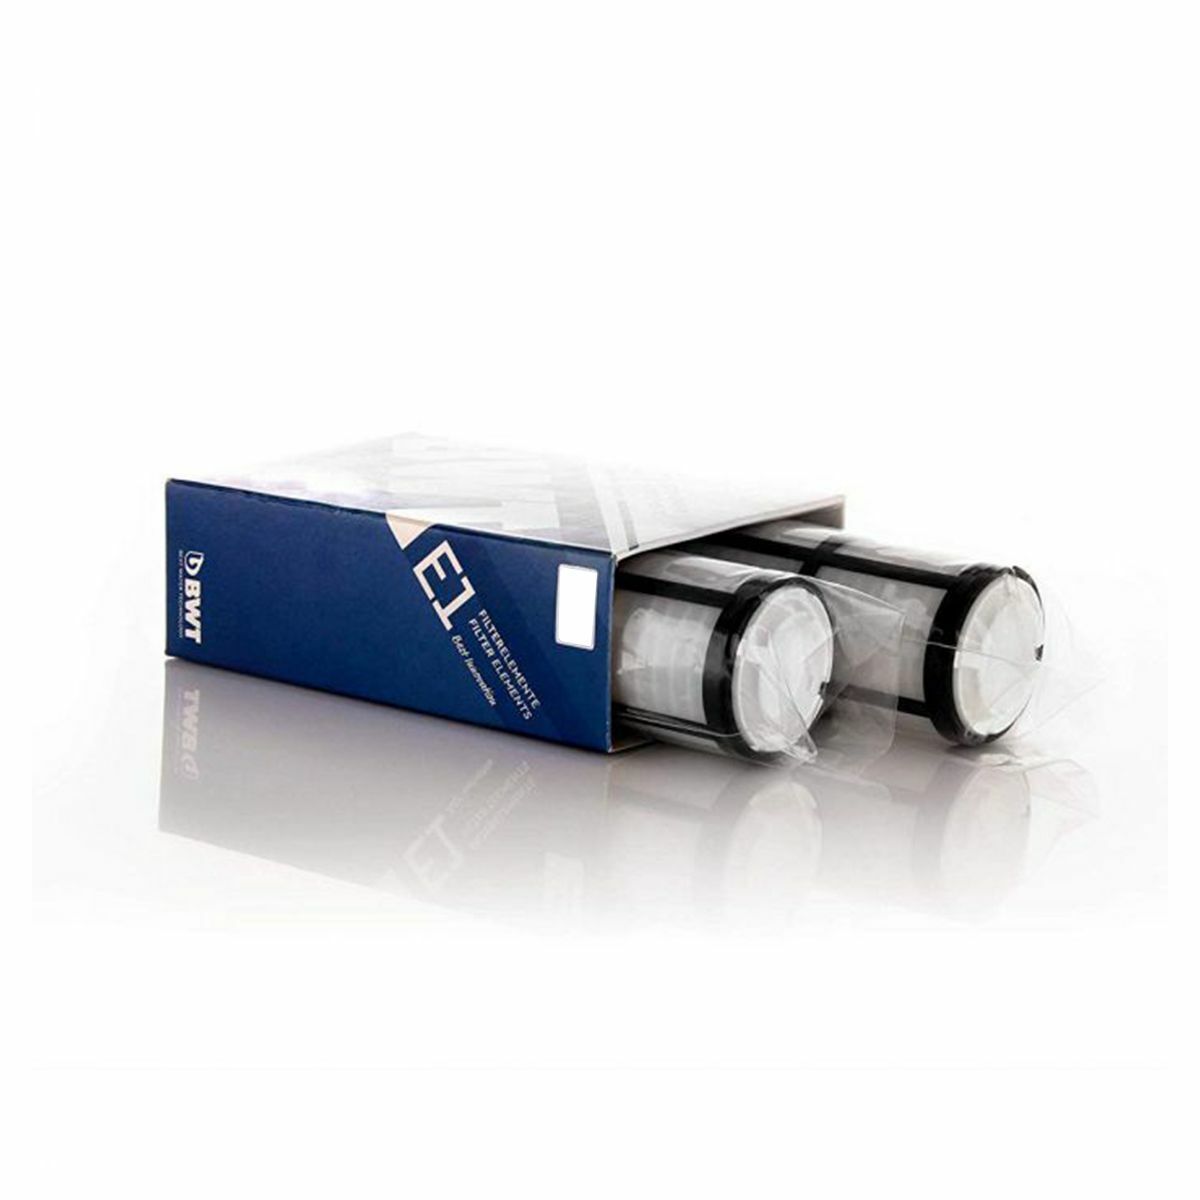 BWT Filterelement für E1 Filter 2er Pack 10386 Ersatzfilter Wasserfilter Filter